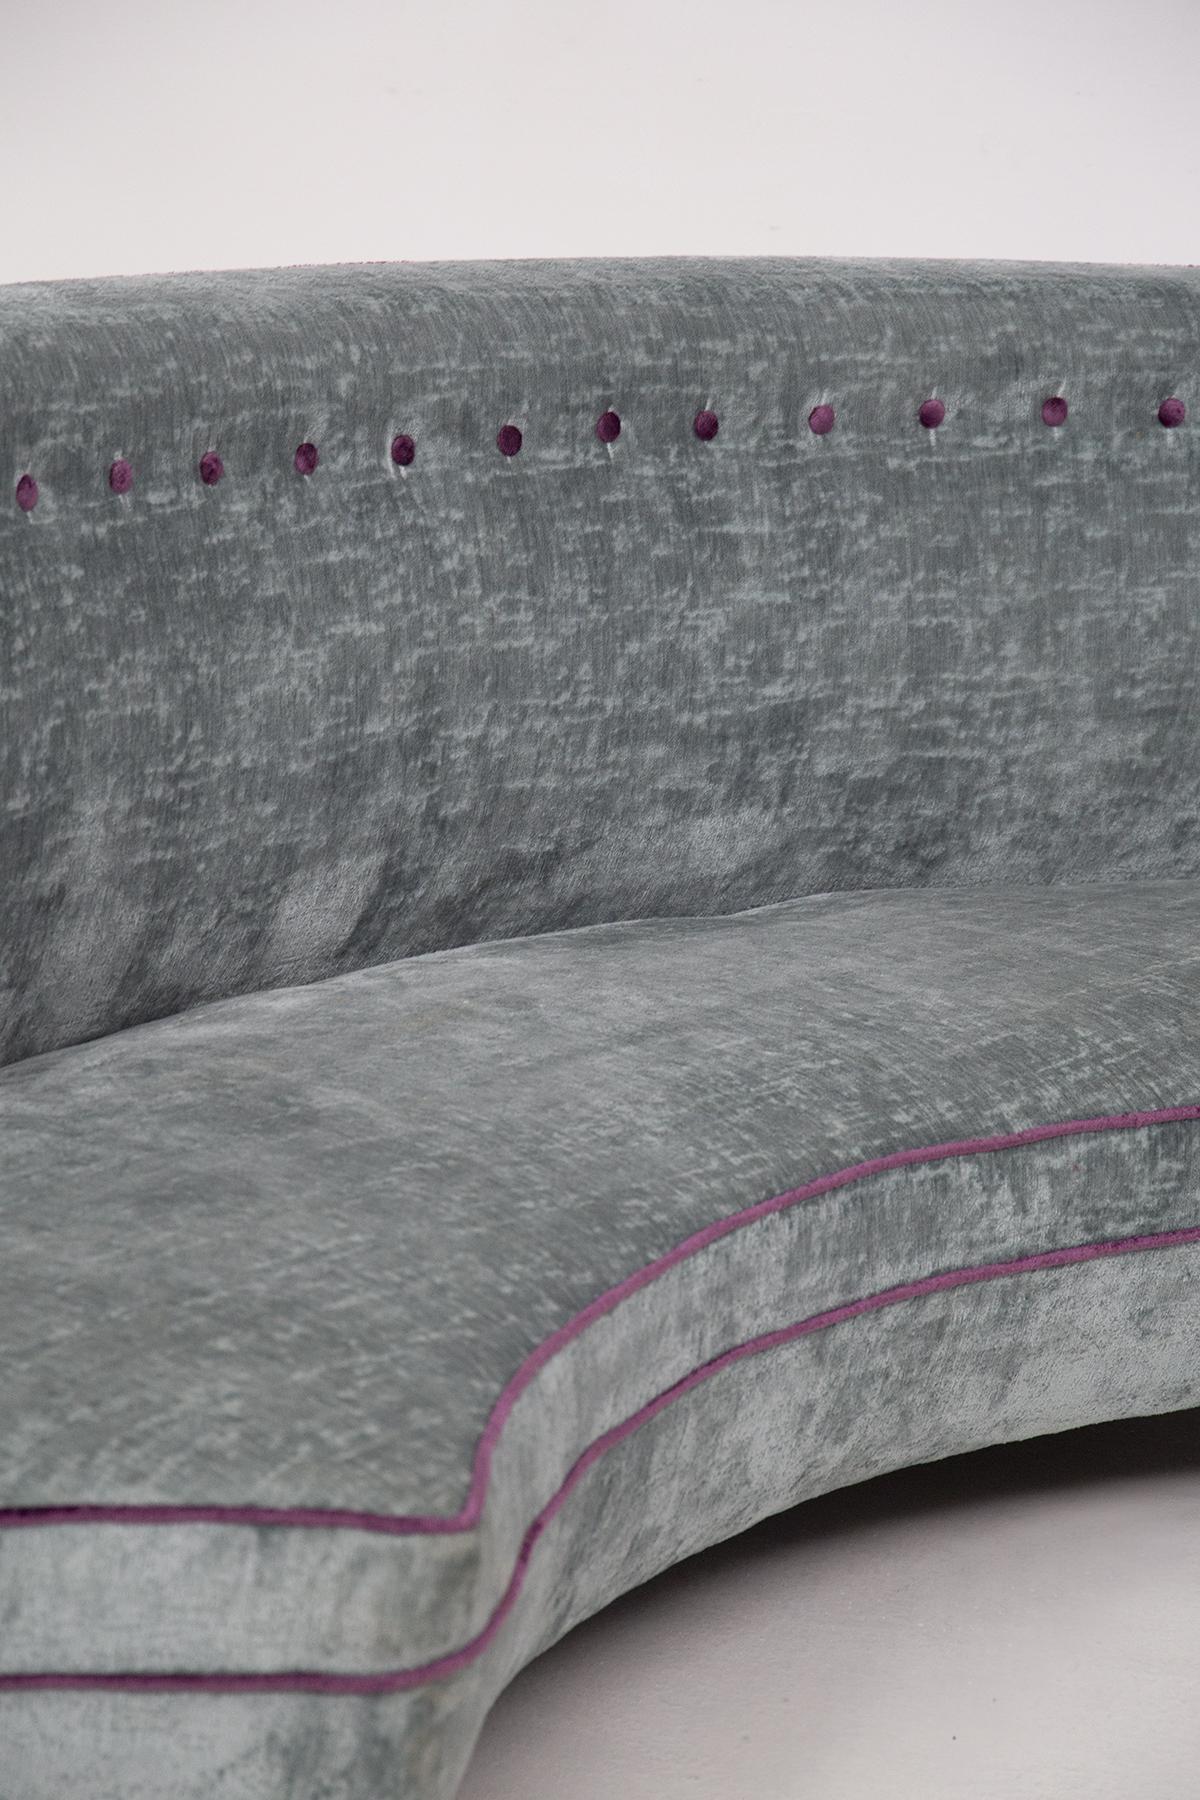 Wunderschönes Vintage-Sofa aus hellblauem Samt, hergestellt in Italien von Isa Bergamo in den 1950er Jahren.
Das Sofa ist ganz aus hellblauem Samt gefertigt und hat eine halbrunde Form. Die Besonderheit des Sofas besteht darin, dass seine Konturen